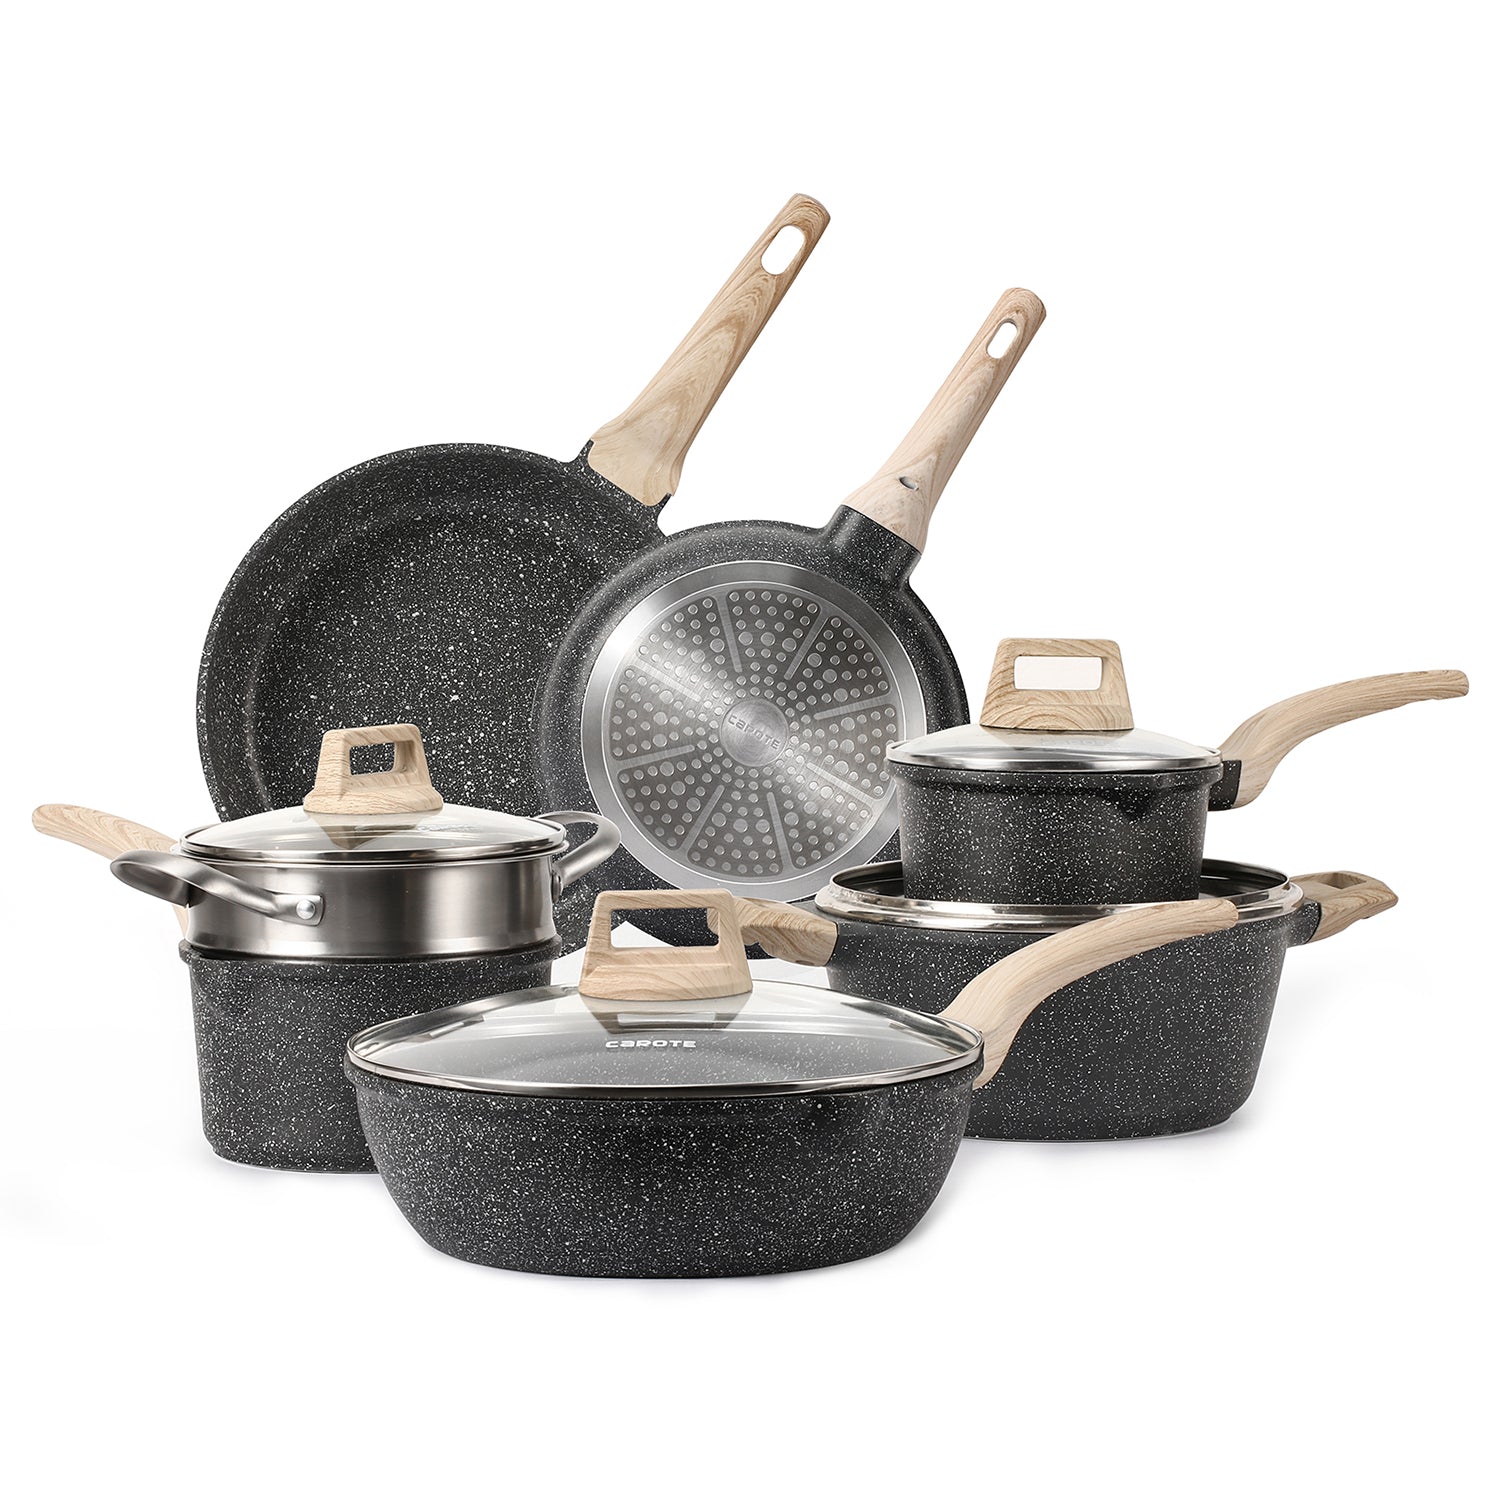 Carote 11 Pcs Pots & Pans White Granite Nonstick Cookware Set Detachable  Handle